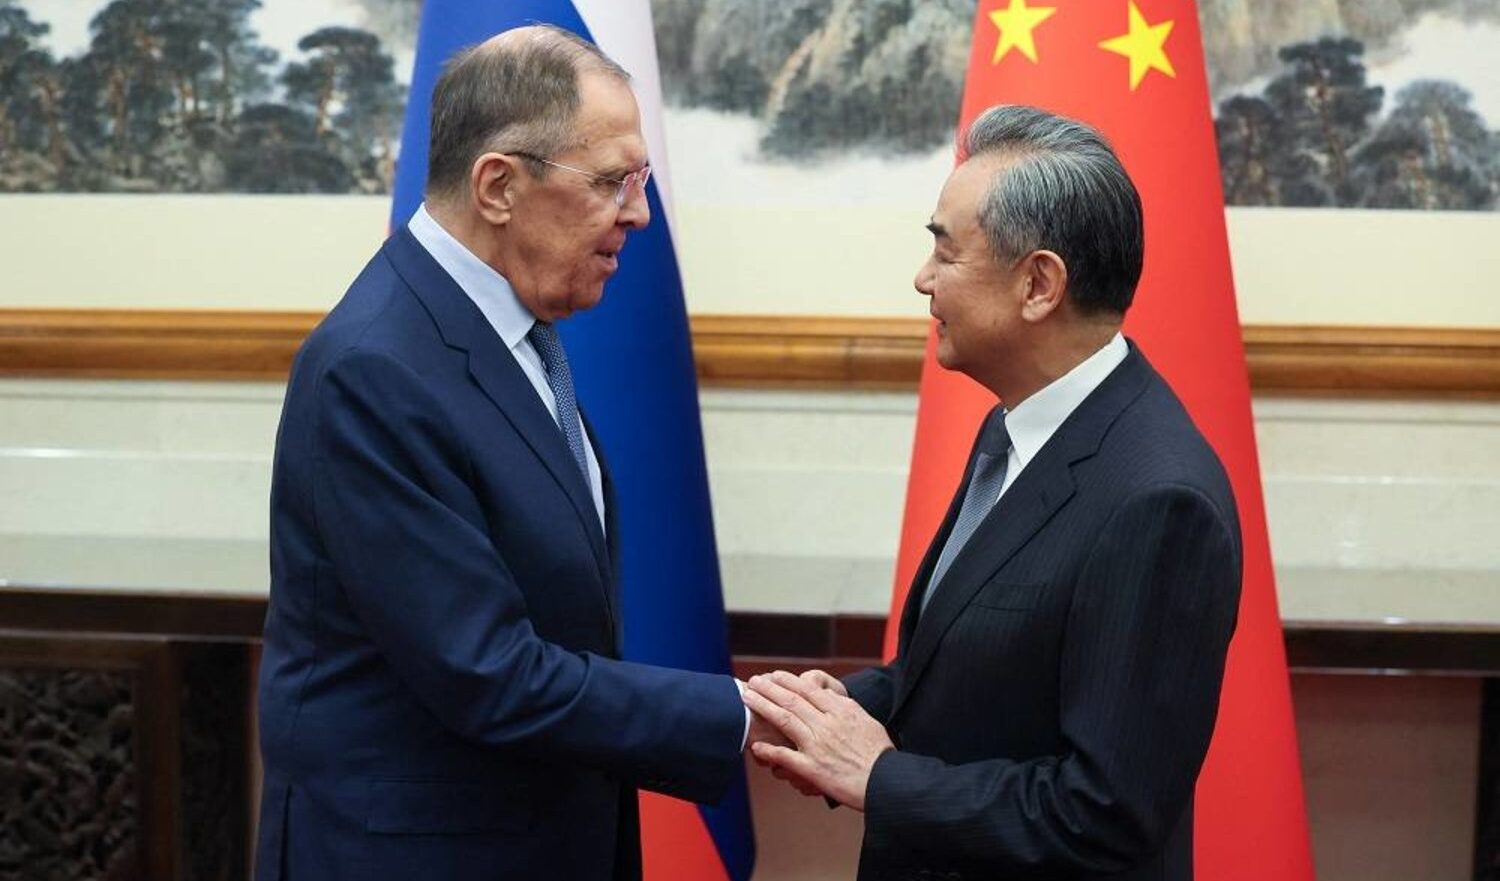 Guerra di Gaza, Wang Yi  a Lavrov: "Soluzione dei due Stati per risolvere in conflitto"